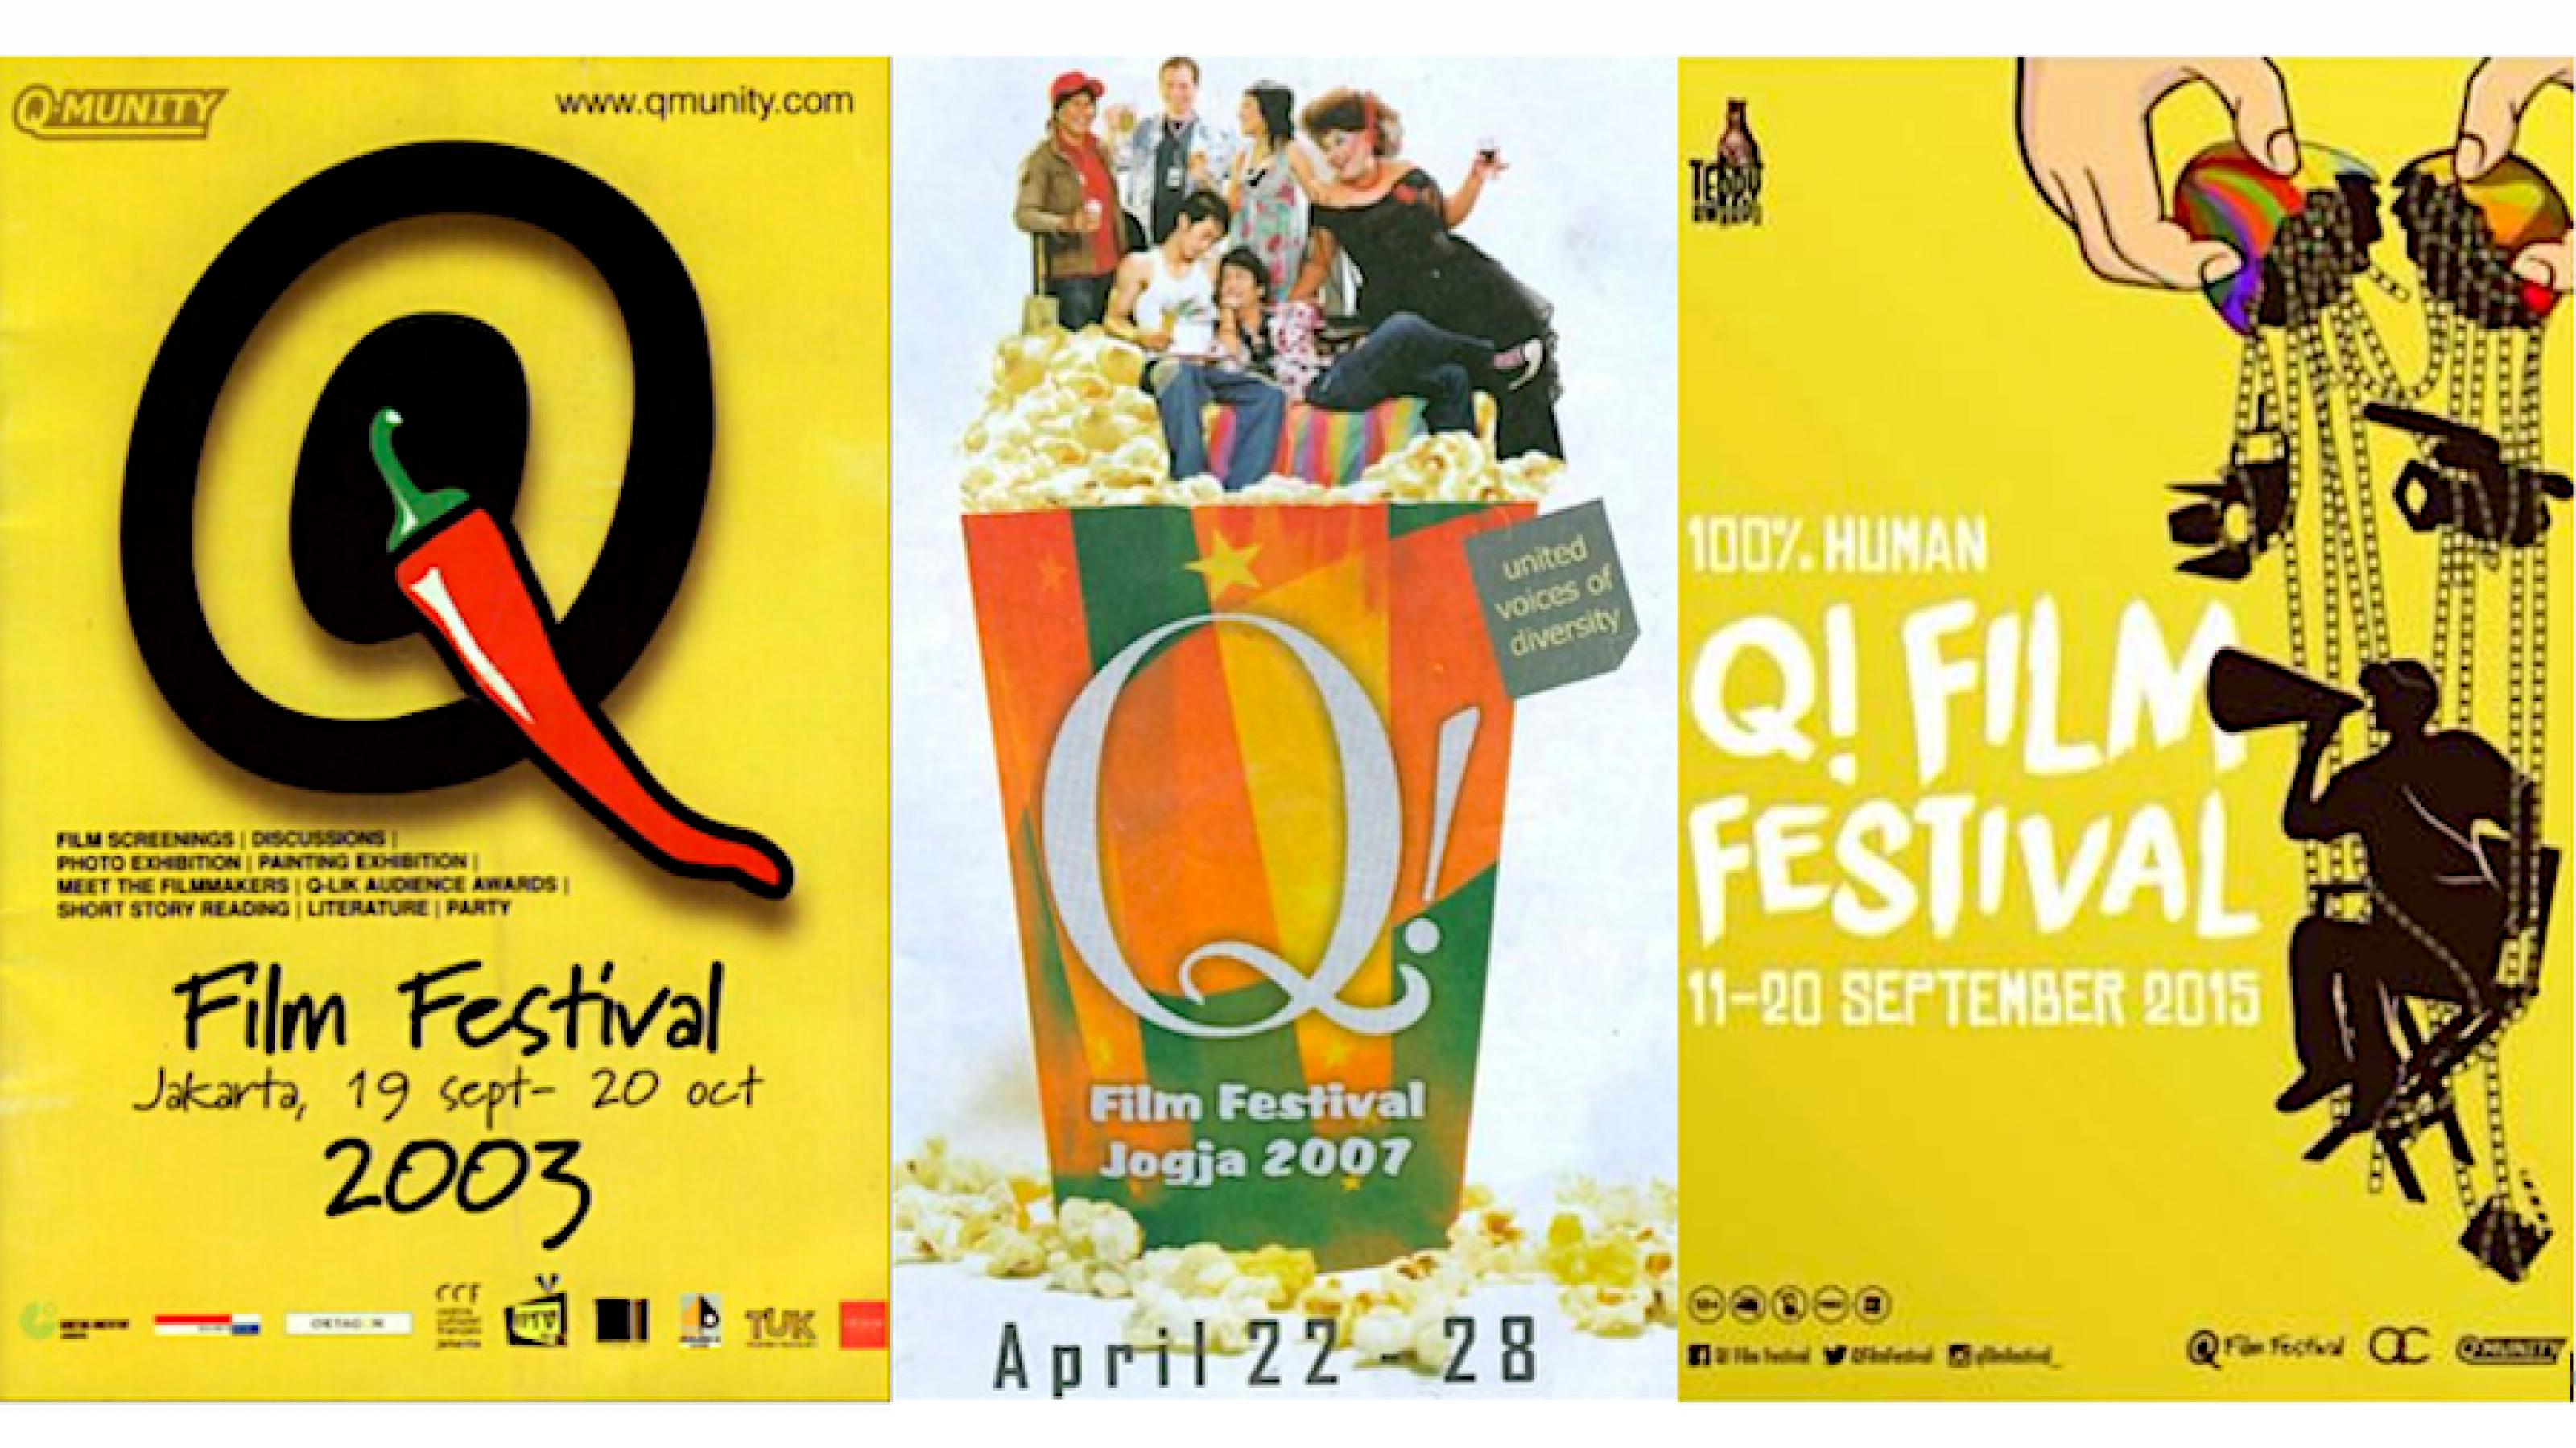 Collage der Poster des  Q! Film Festivals in Jakarta aus den Jahren 2003, 2007 und 2013